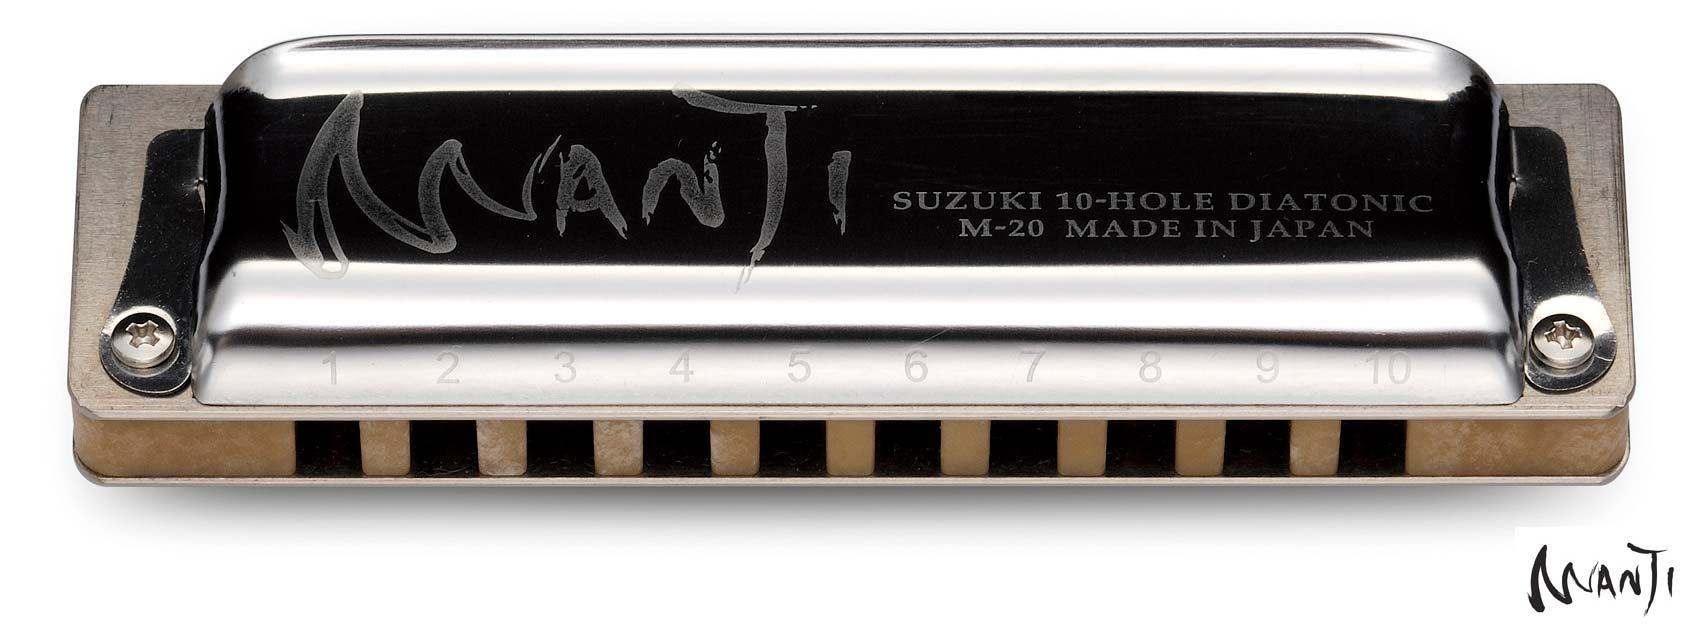 6: Suzuki Manji Standard M-20 Diatonisk Mundharmonika (G)